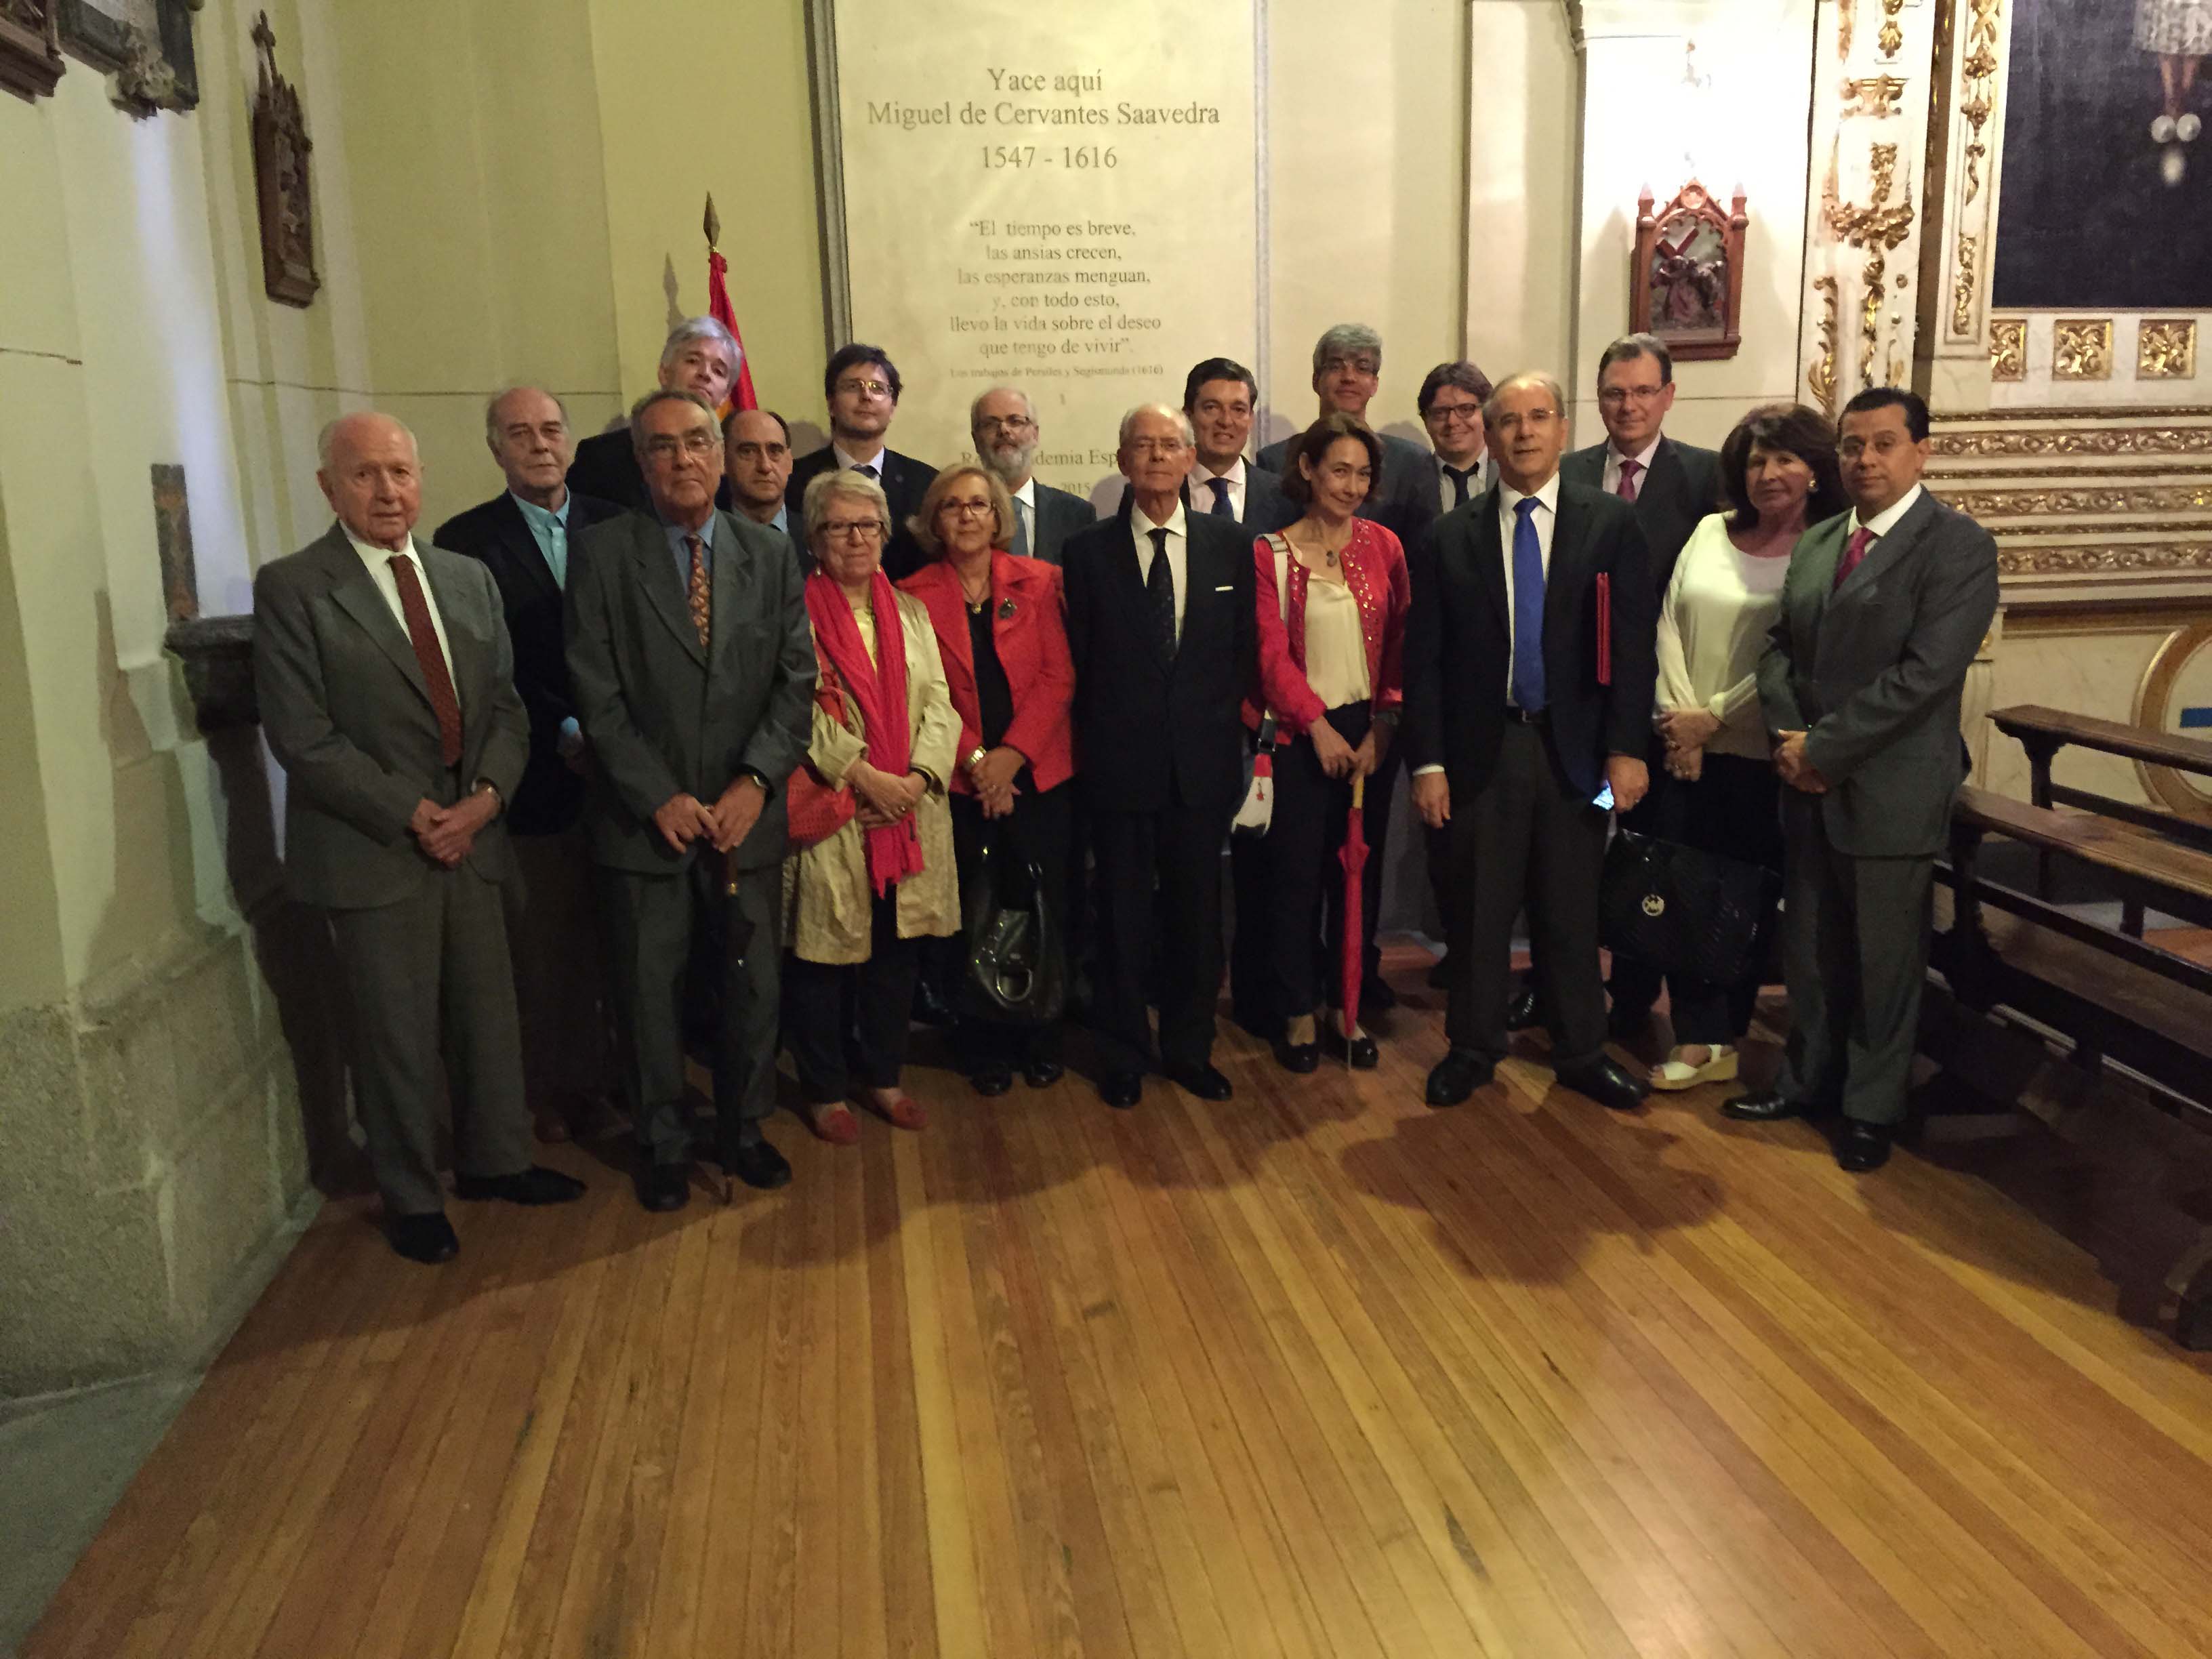 La Comisión Nacional del Homenaje Universal al Idioma Español visita los restos de Miguel de Cervantes